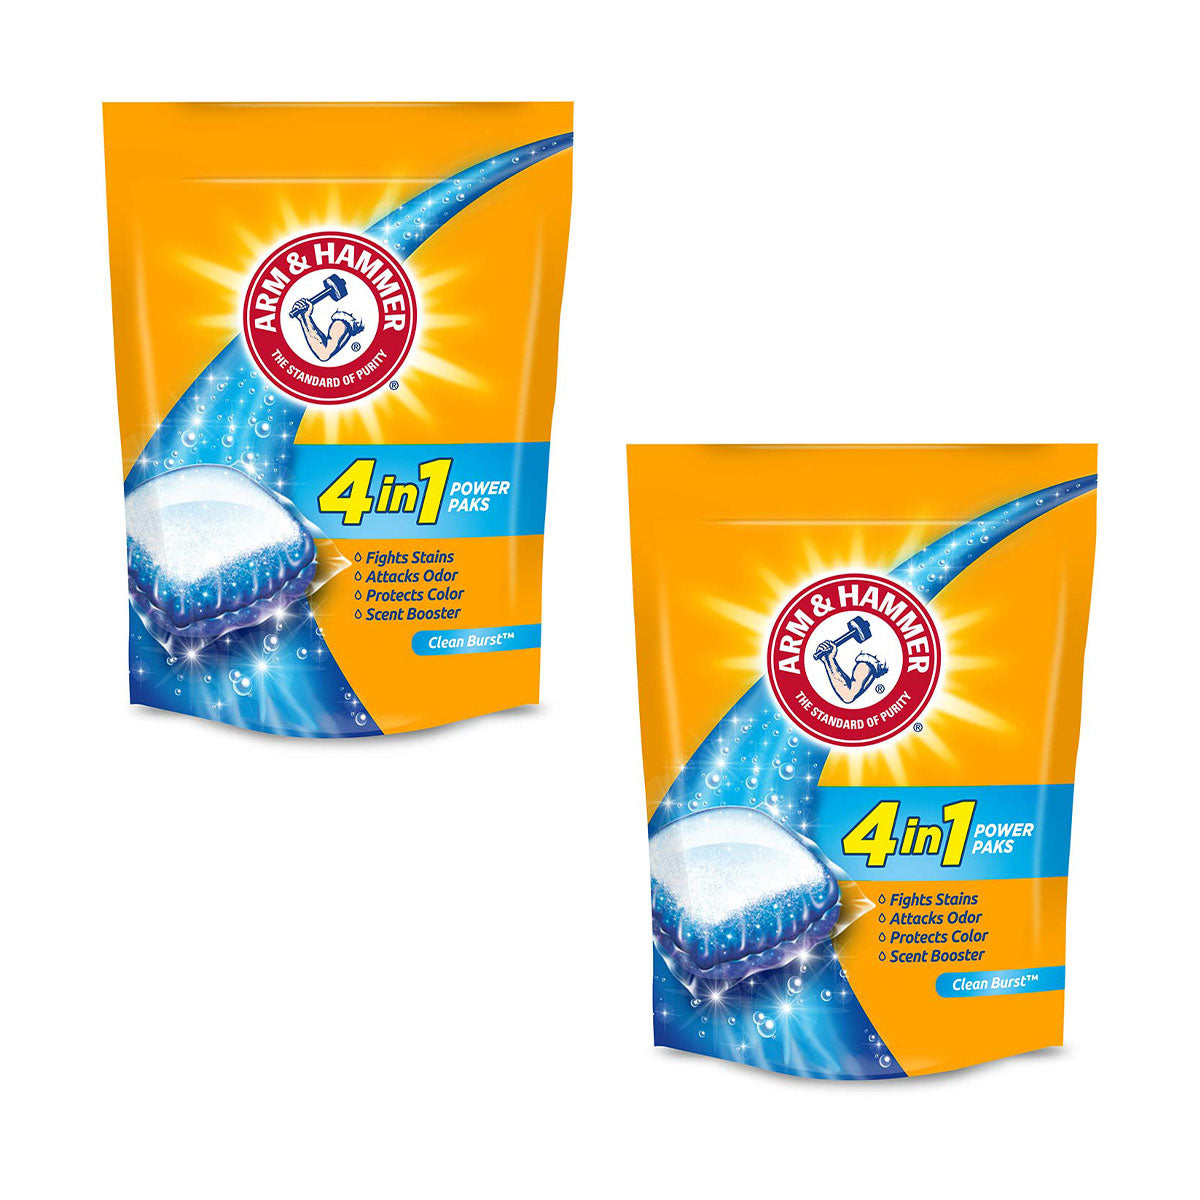 Pack Detergente para ropa en cápsulas Power Paks 4-en-1 Arm & Hammer, Alta Eficiencia (21 unidades) 2x $14.990